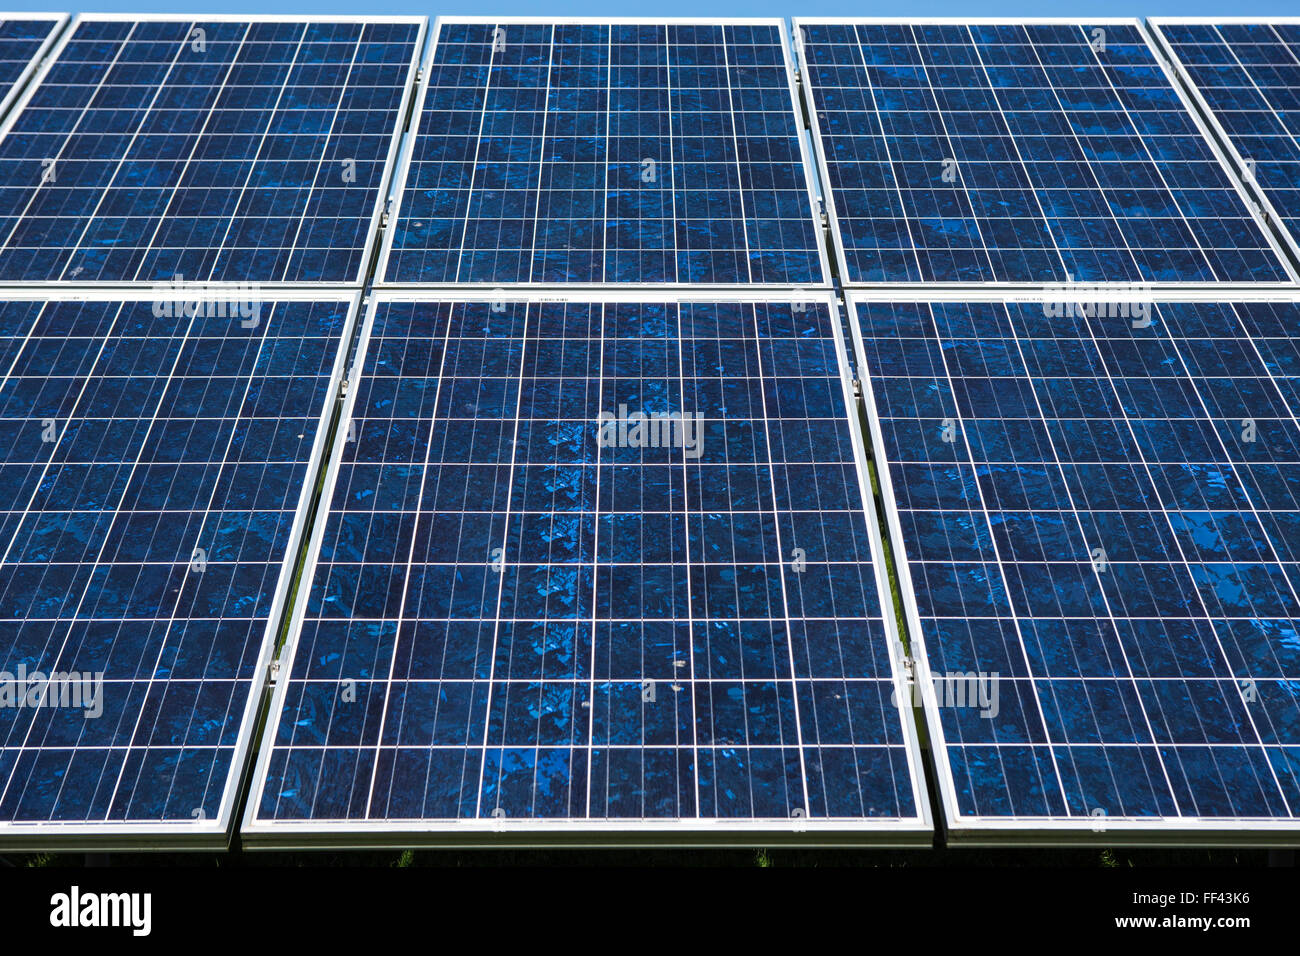 Des rangées de panneaux solaires photovoltaïques dans un champ pour la production d'électricité. L'énergie renouvelable à Wadebridge, Cornwall, UK. Banque D'Images